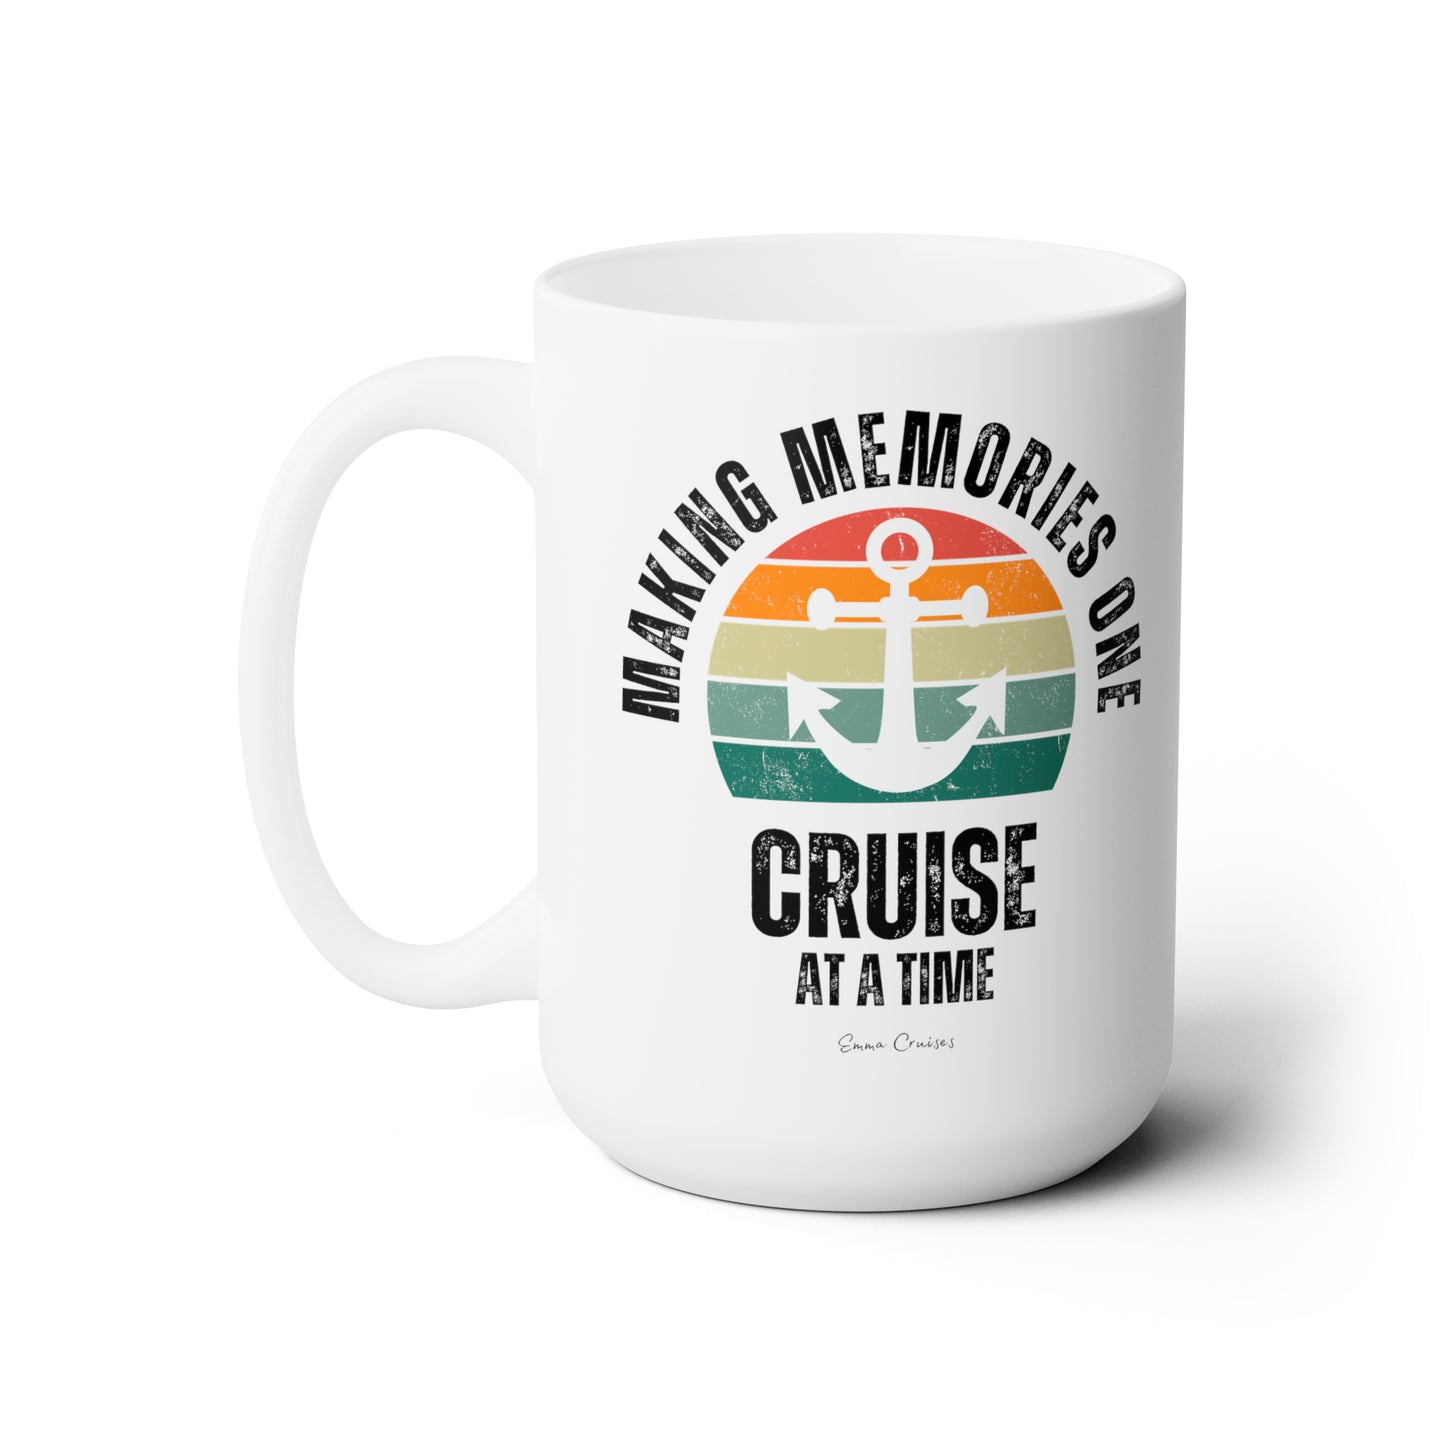 Making Memories One Cruise at a Time - Ceramic Mug